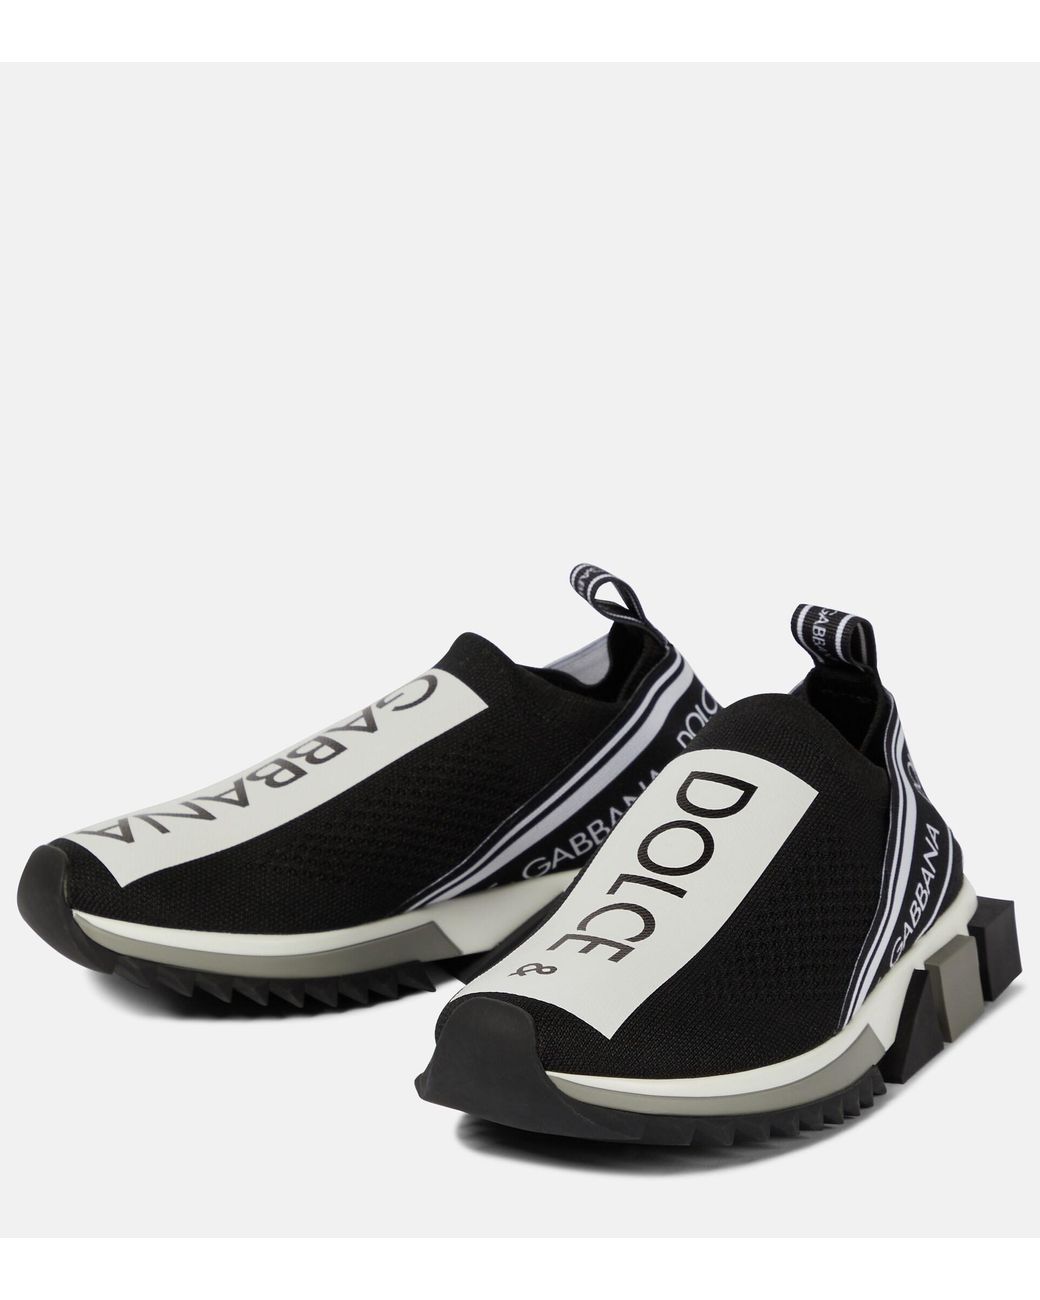 Dolce & Gabbana Sorrento Sneakers in Black | Lyst